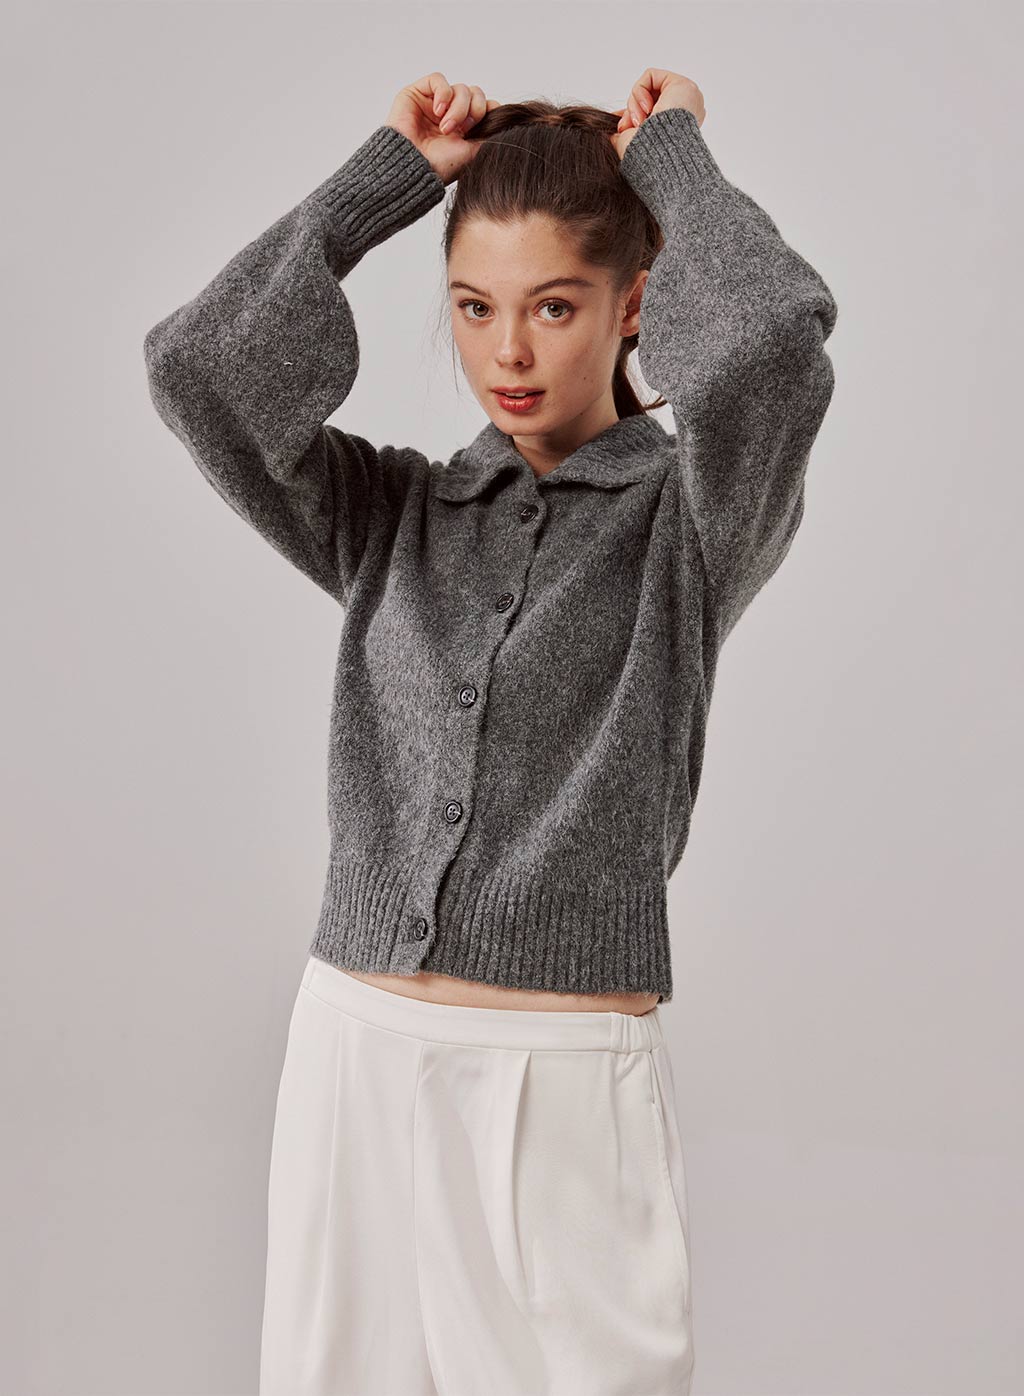 Knitwear for Women | Cashmere & Merino Wool Knits | Nap Loungewear